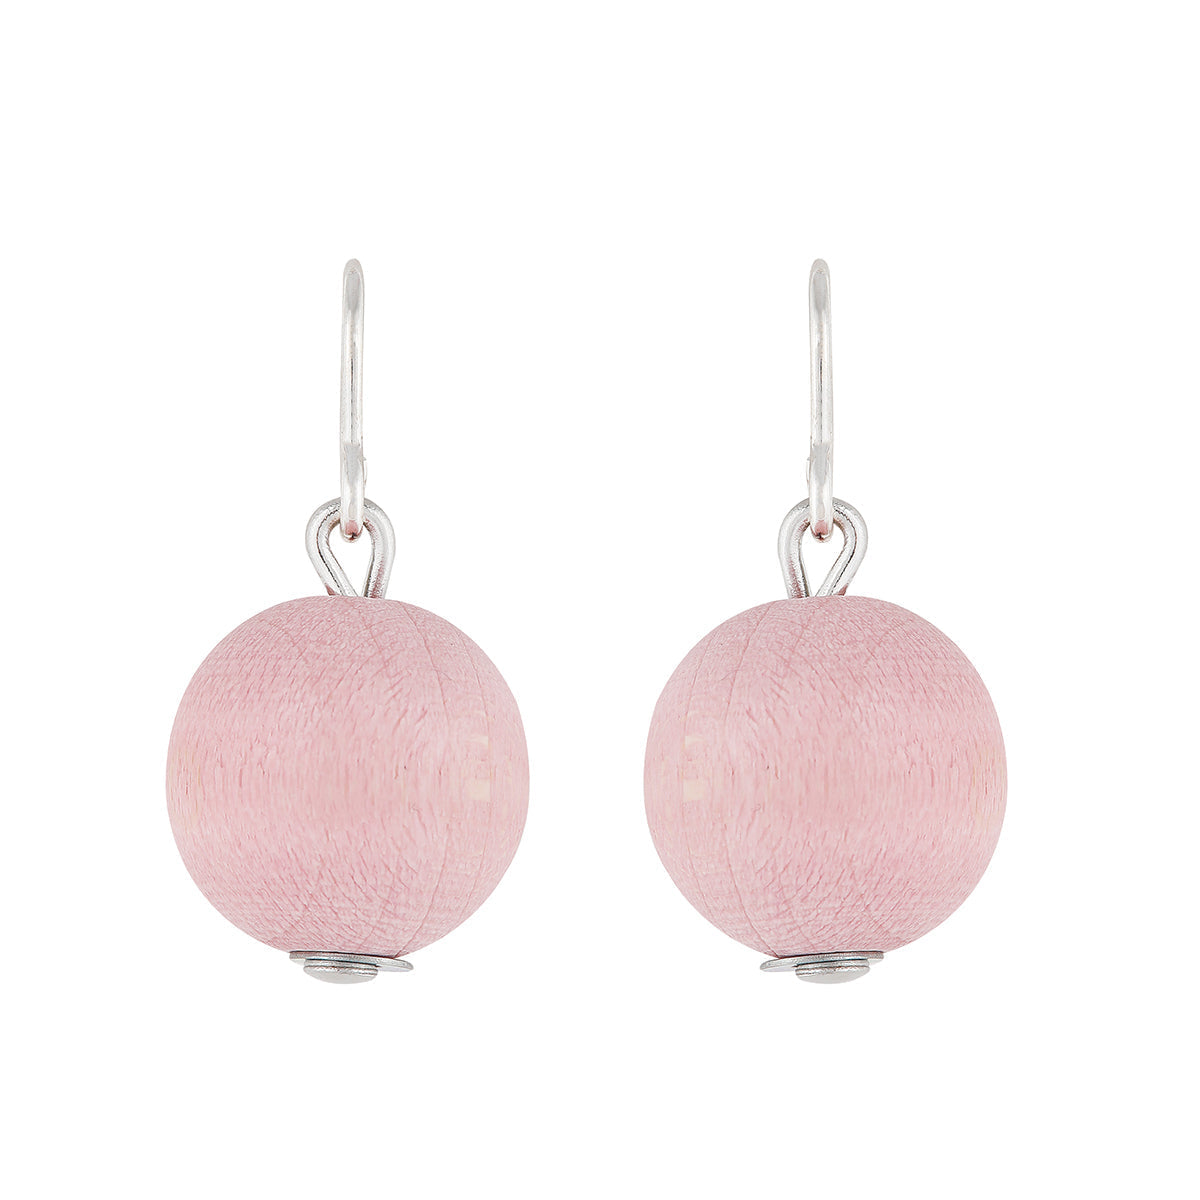 Karpalo earrings, light pink